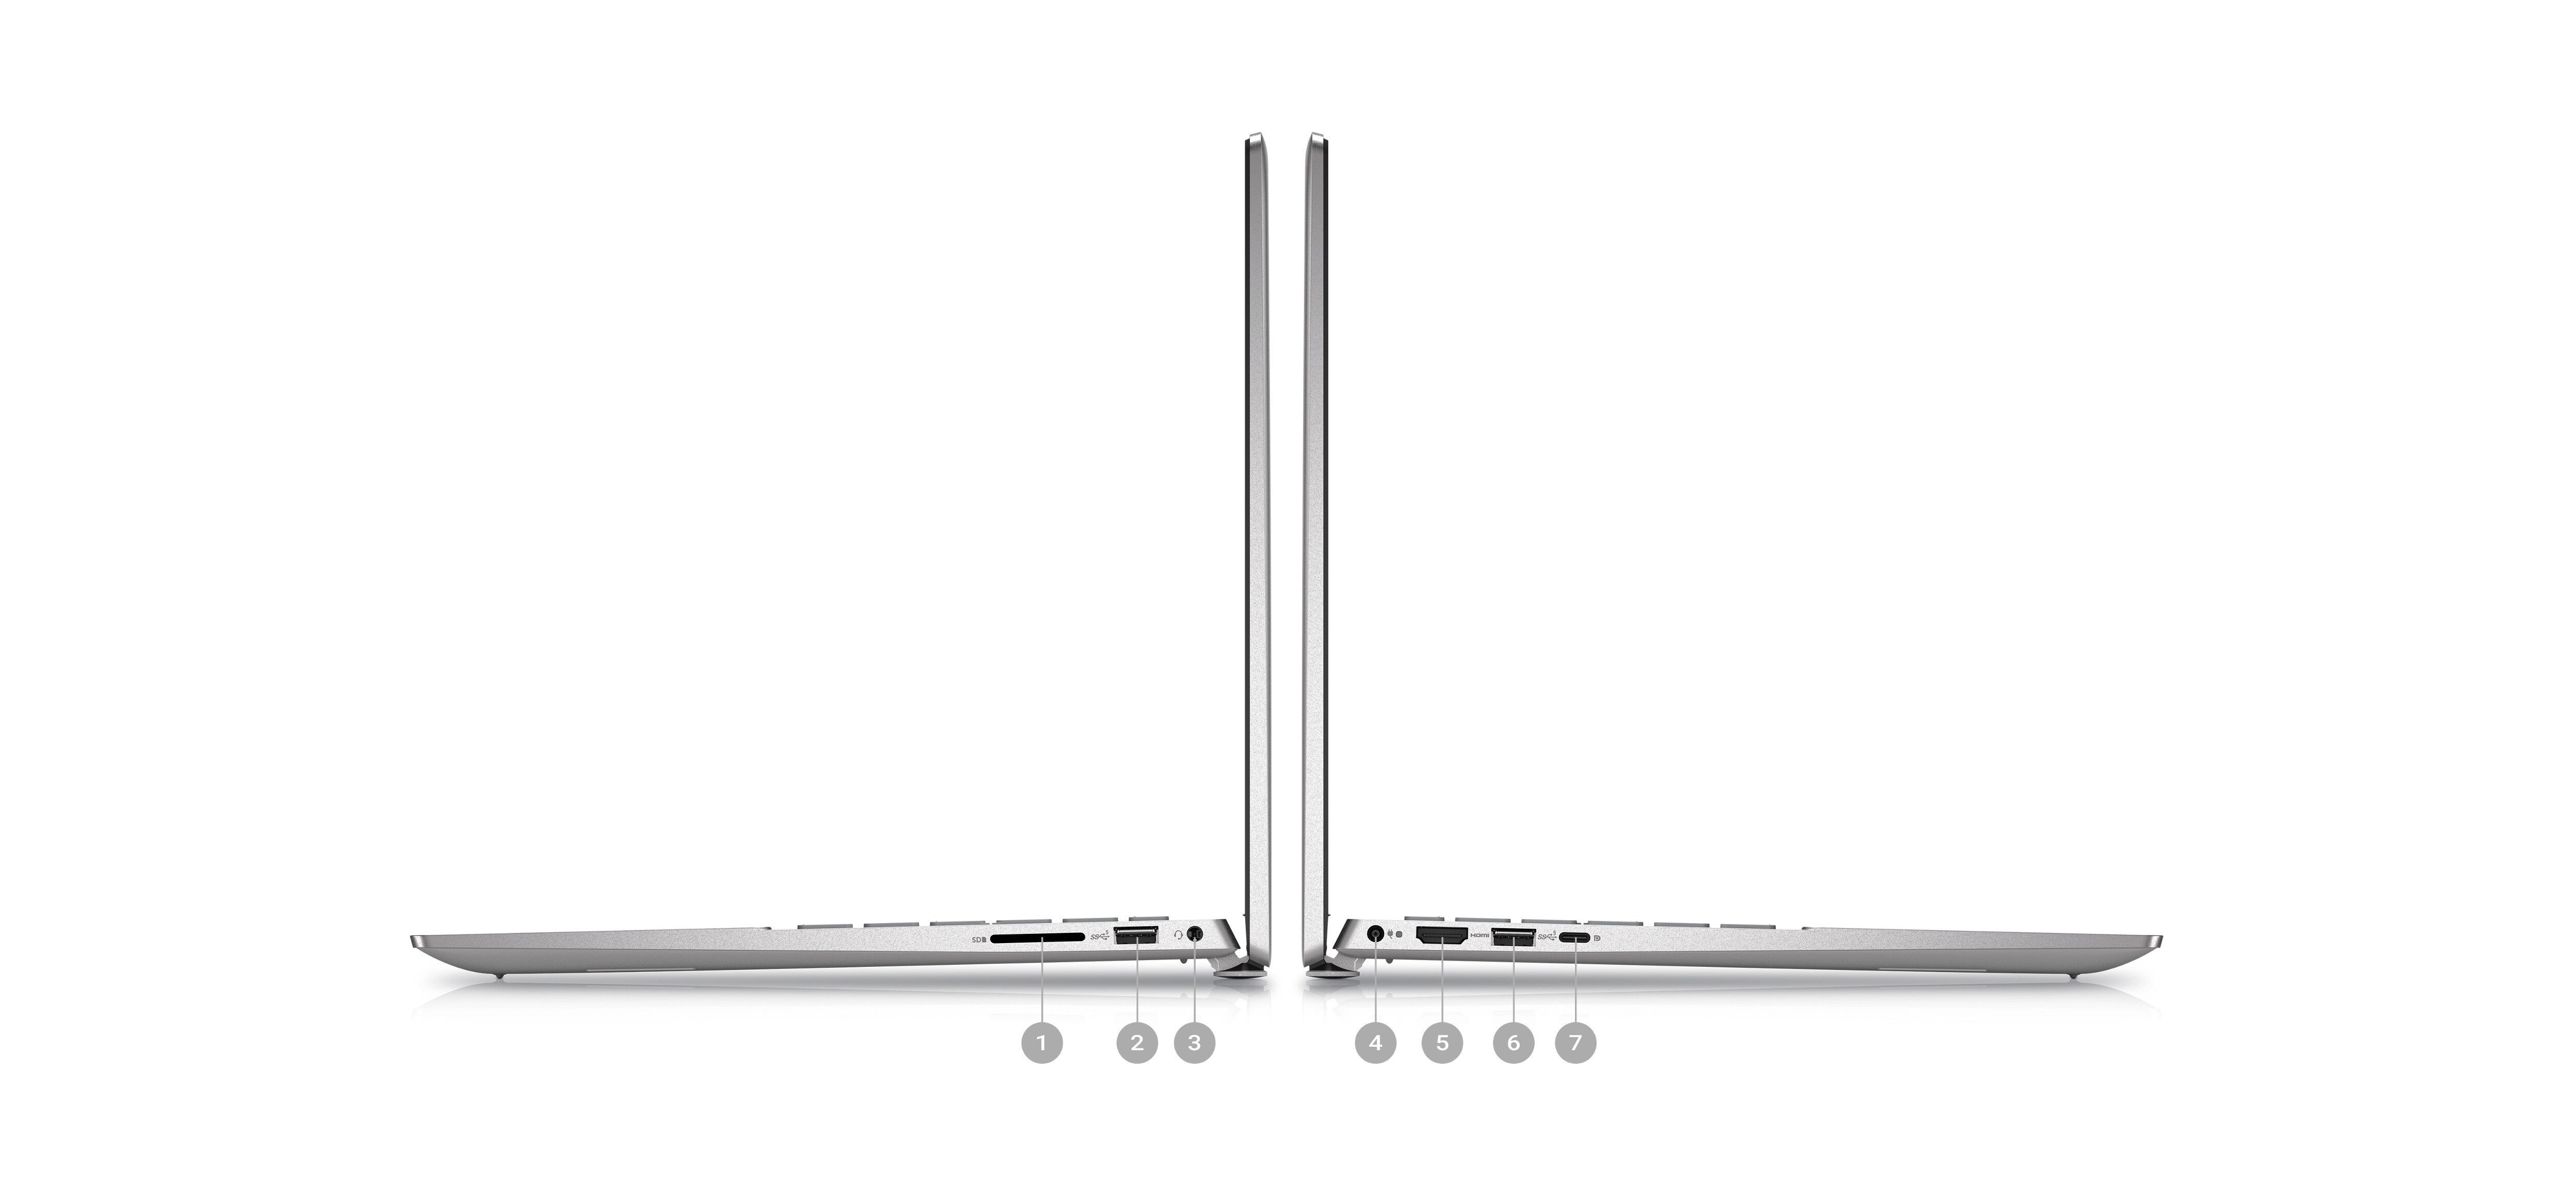 Abbildung von zwei seitlich platzierten Dell Inspiron 5425-Laptops, wobei die Zahlen von 1 bis 7 die Produktanschlüsse angeben.